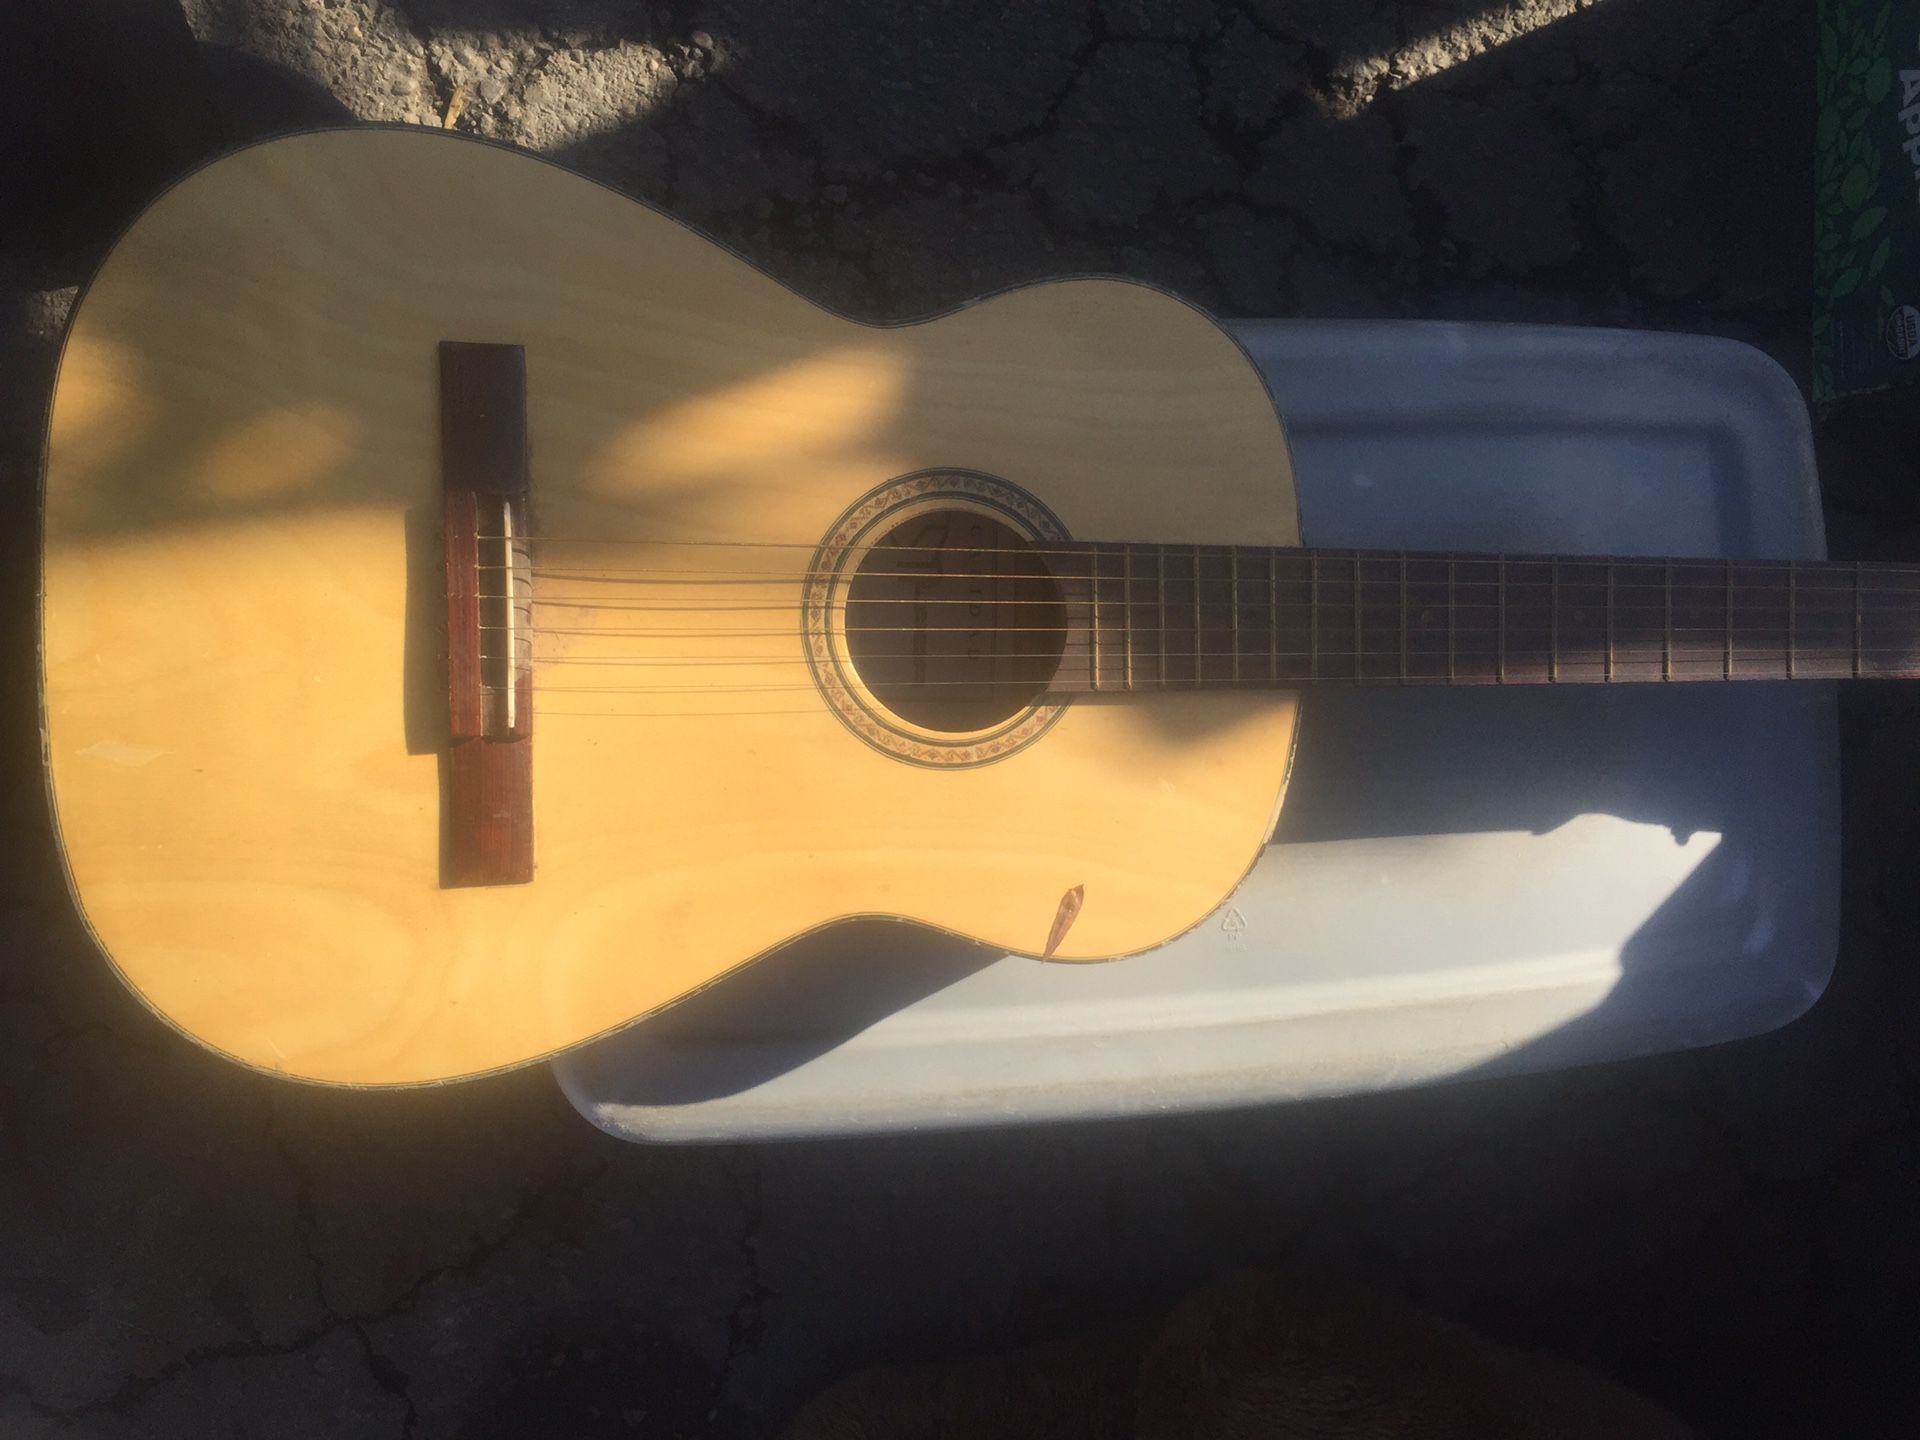 Estrada Calidad Guitar $45